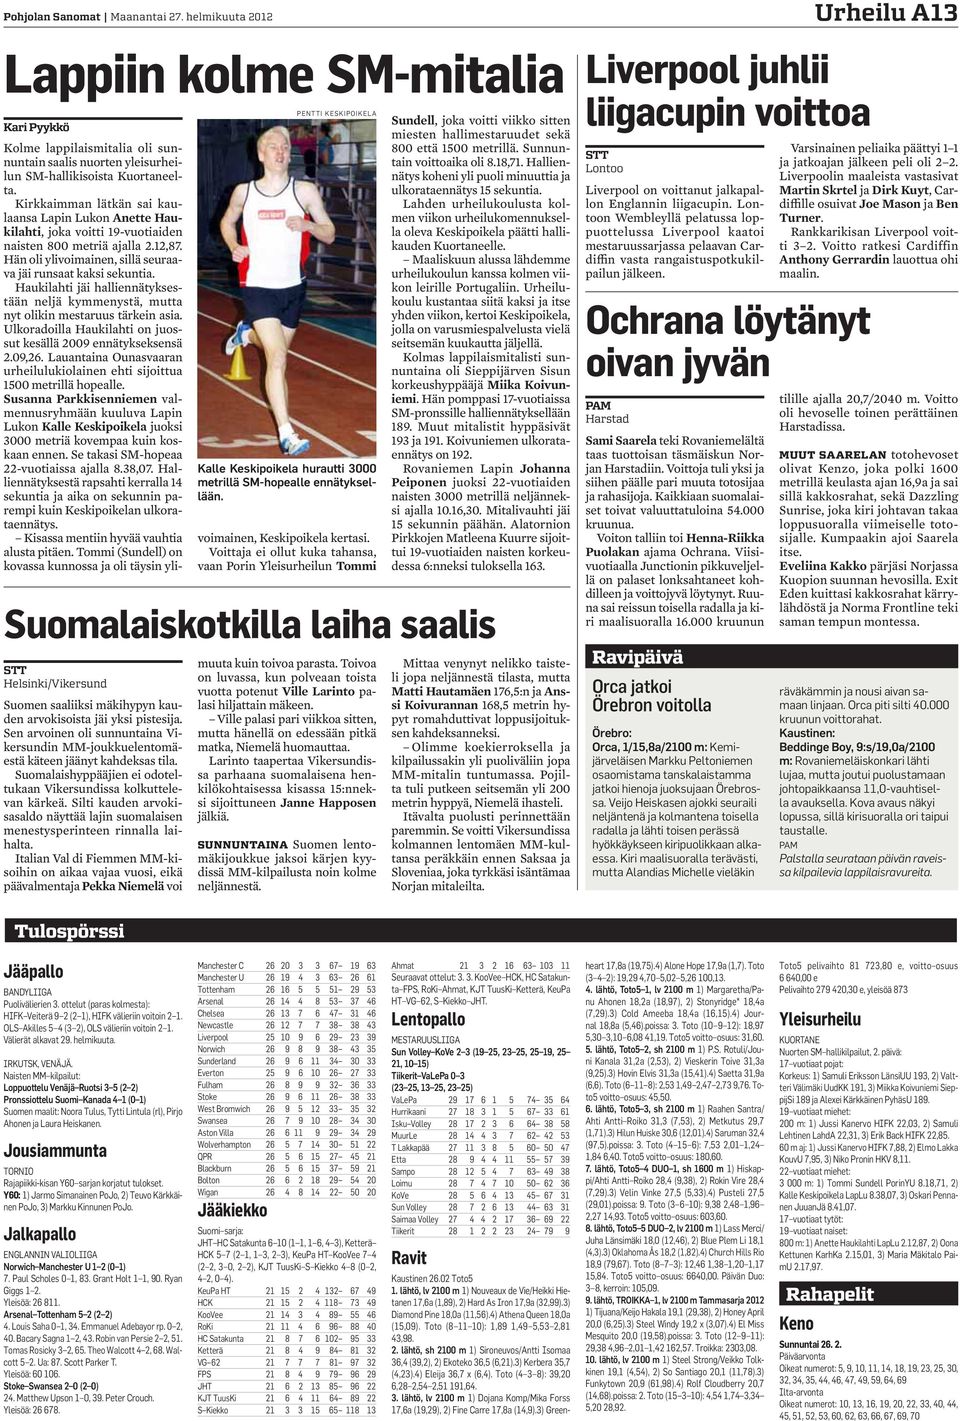 Kirkkaimman lätkän sai kaulaansa Lapin Lukon Anette Haukilahti, joka voitti 19-vuotiaiden naisten 800 metriä ajalla 2.12,87. Hän oli ylivoimainen, sillä seuraava jäi runsaat kaksi sekuntia.